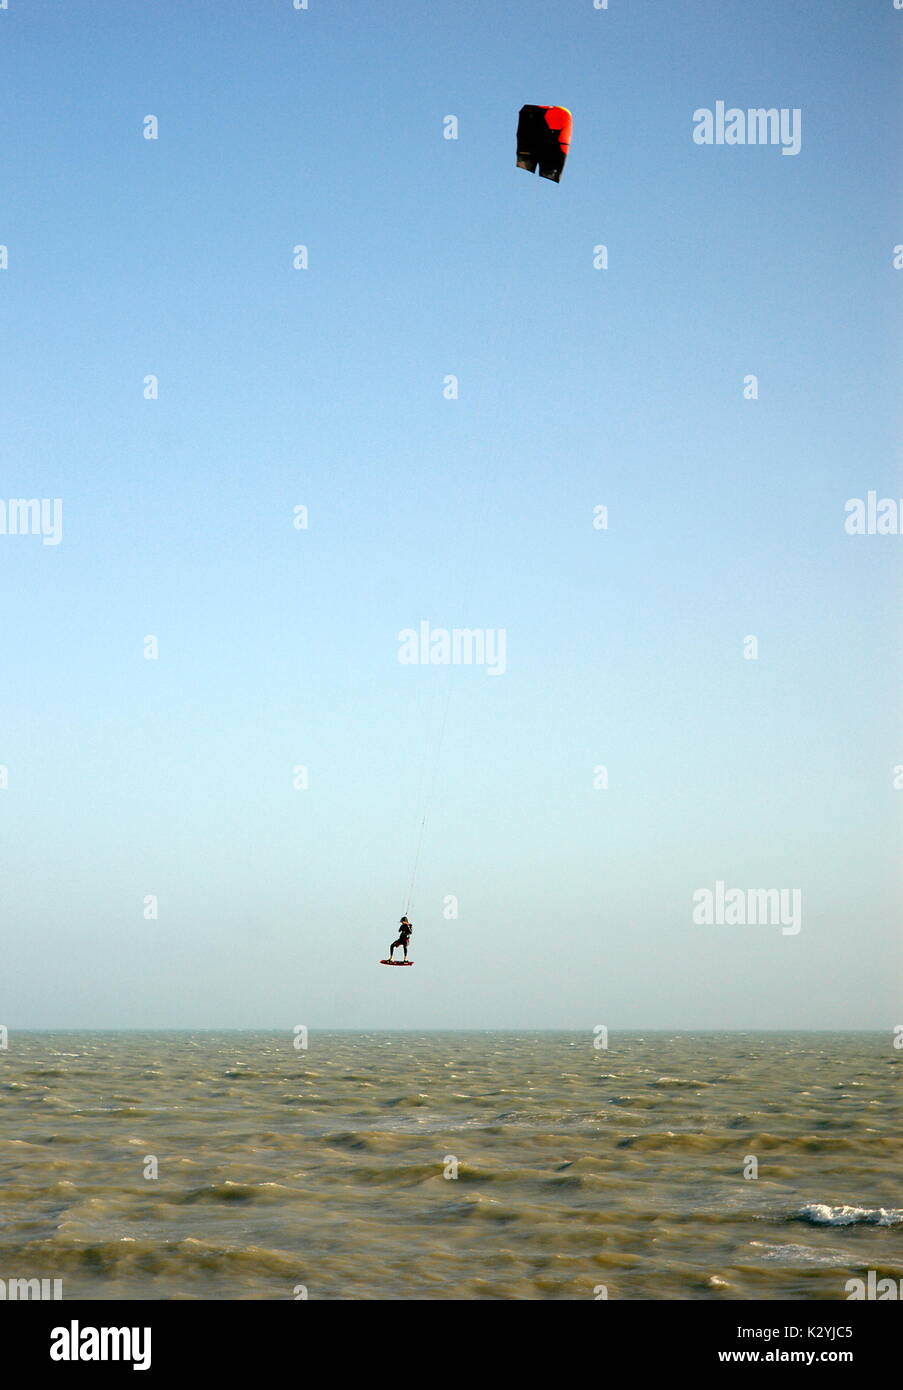 AJAXNETPHOTO. WORTHING, England. - Ein KITE SURFER ERHÄLT AIRBORNE aus rauhen Wellen bei starkem Wind. Foto: Jonathan Eastland/AJAX REF: R 61209_1127 Stockfoto